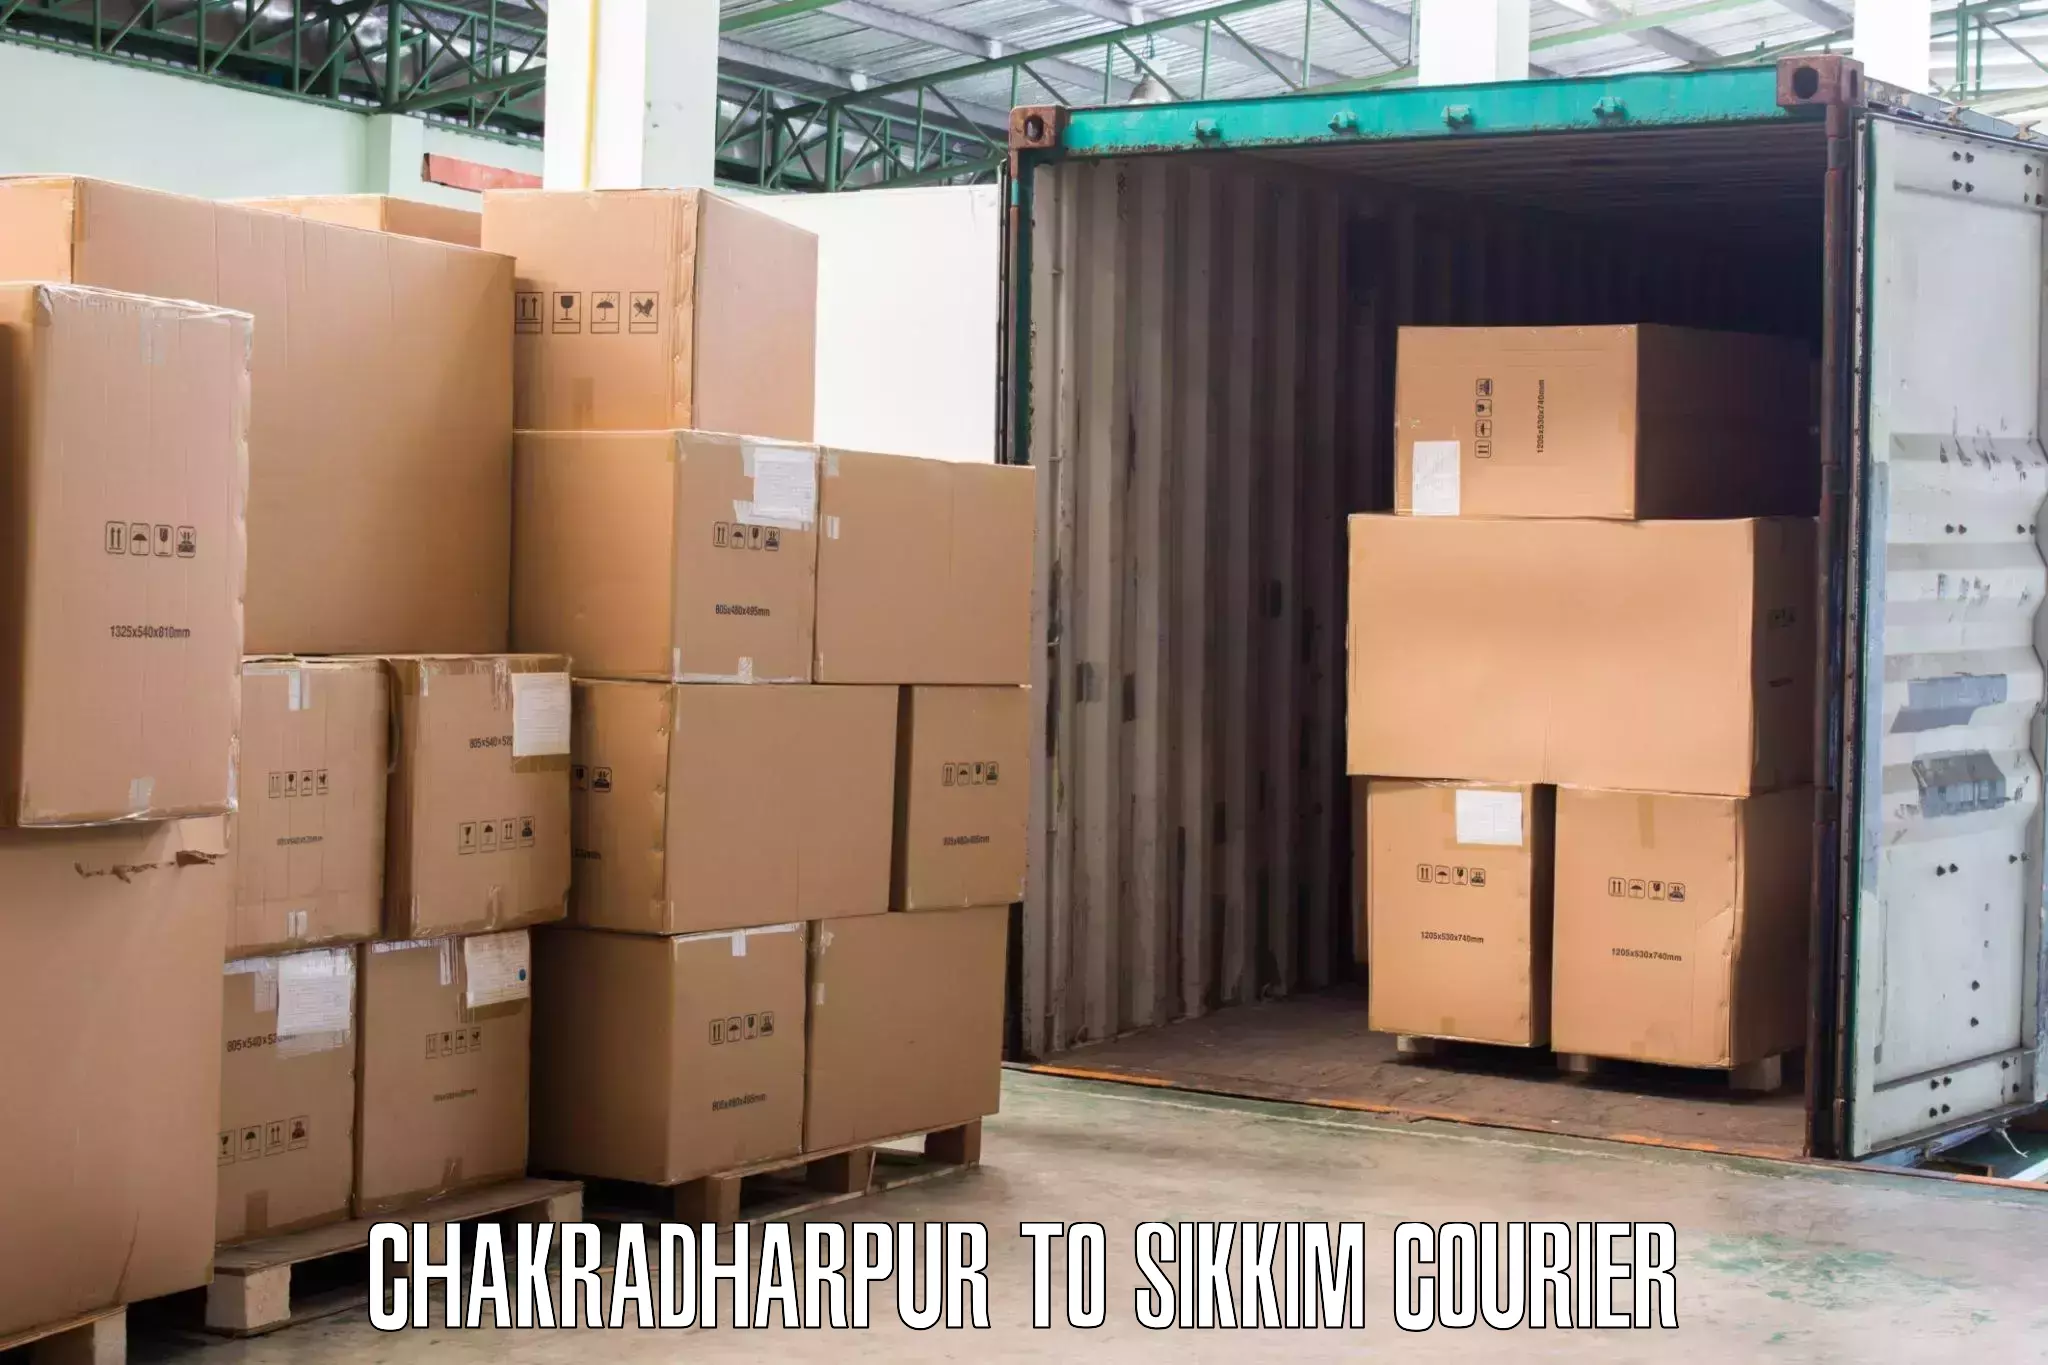 Furniture relocation experts Chakradharpur to Namchi